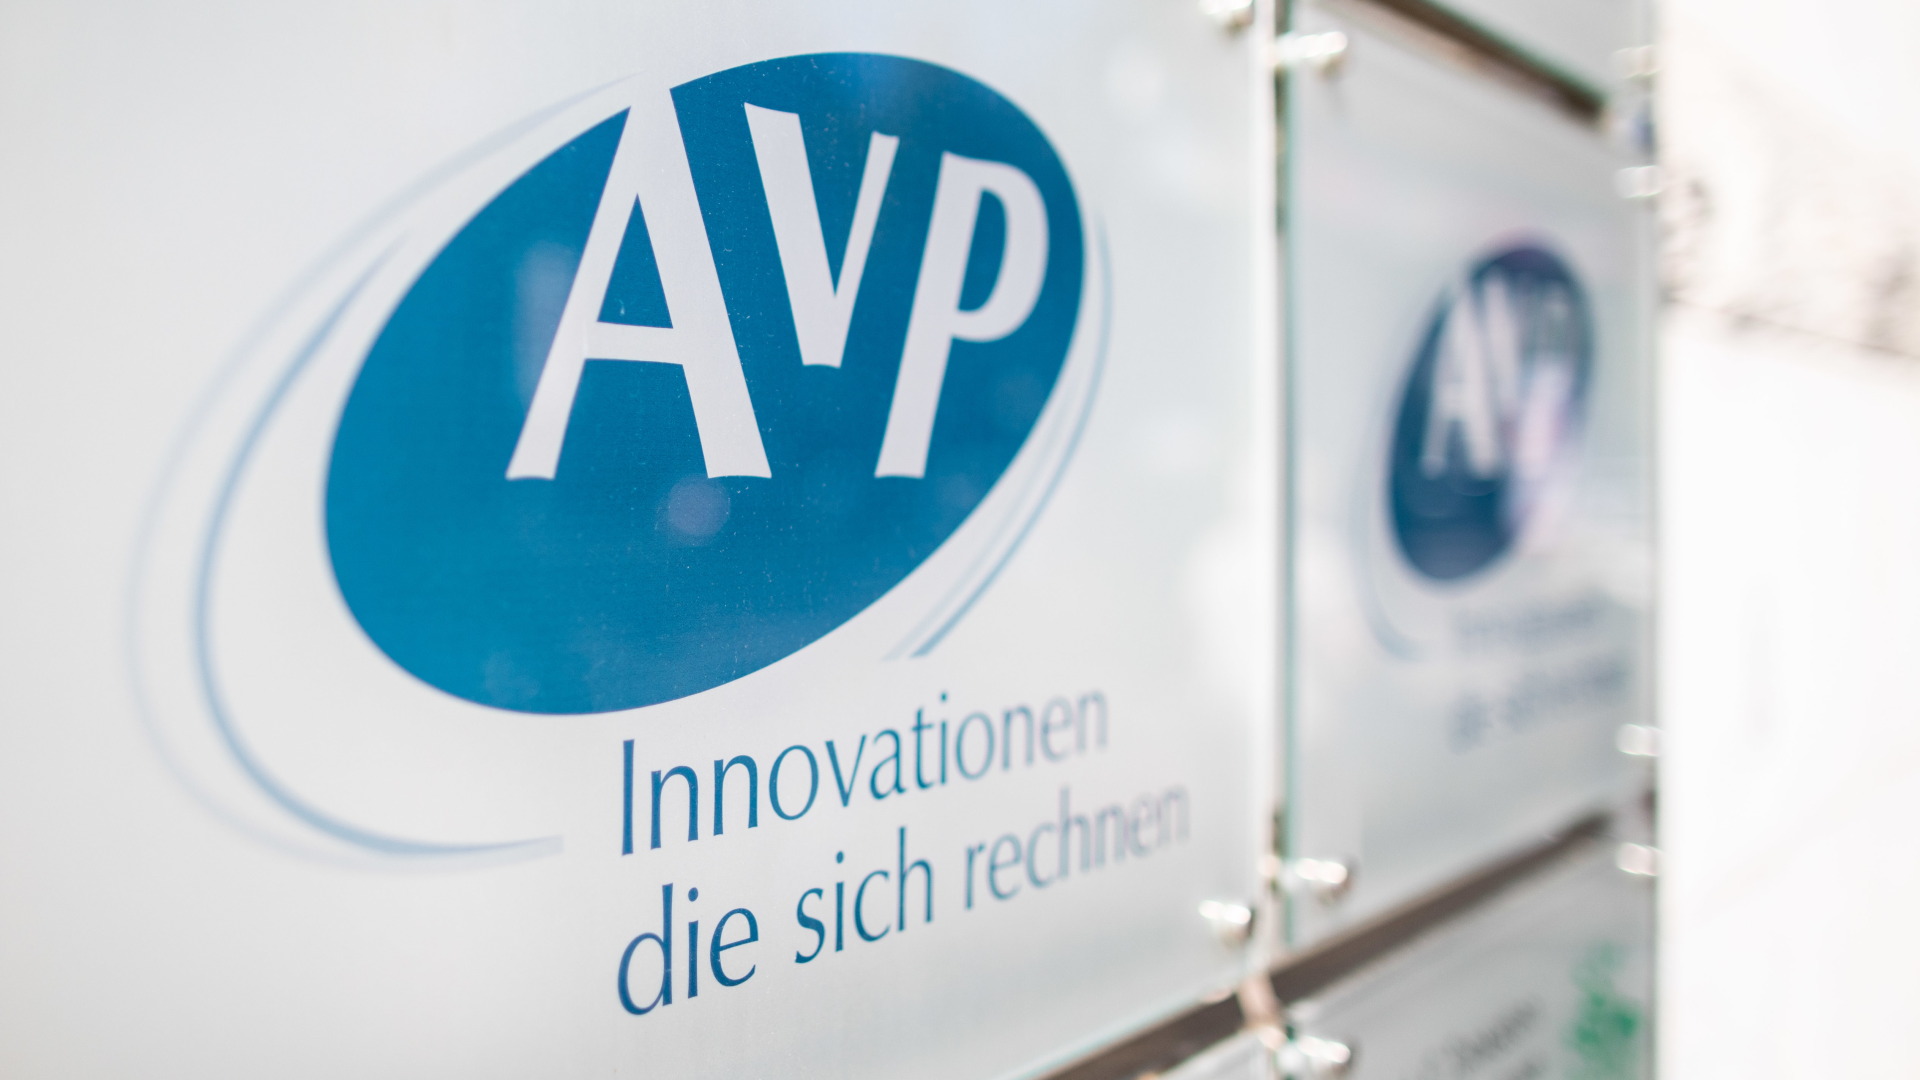 Das Firmenschild des Apothekenrechenzentrums "AvP" | Foto: picture alliance/Marcel Kusch/dpa